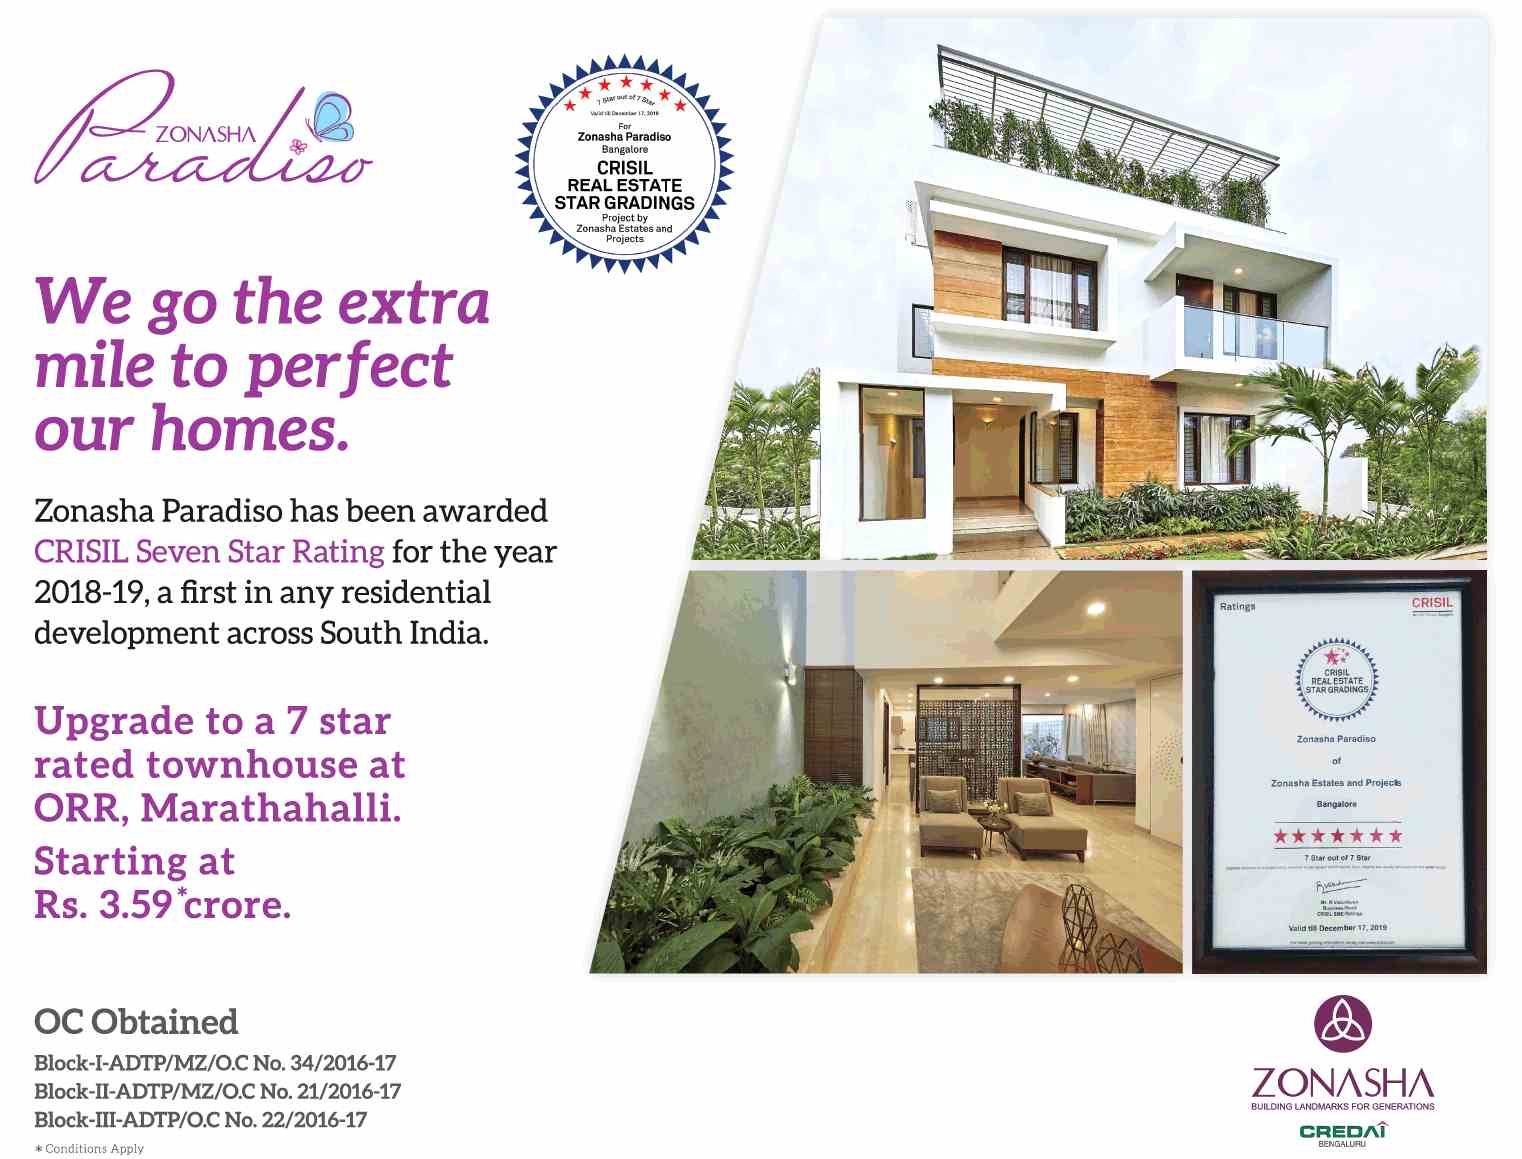 Experience a lavish lifestyle at Zonasha Paradiso in Bangalore Update